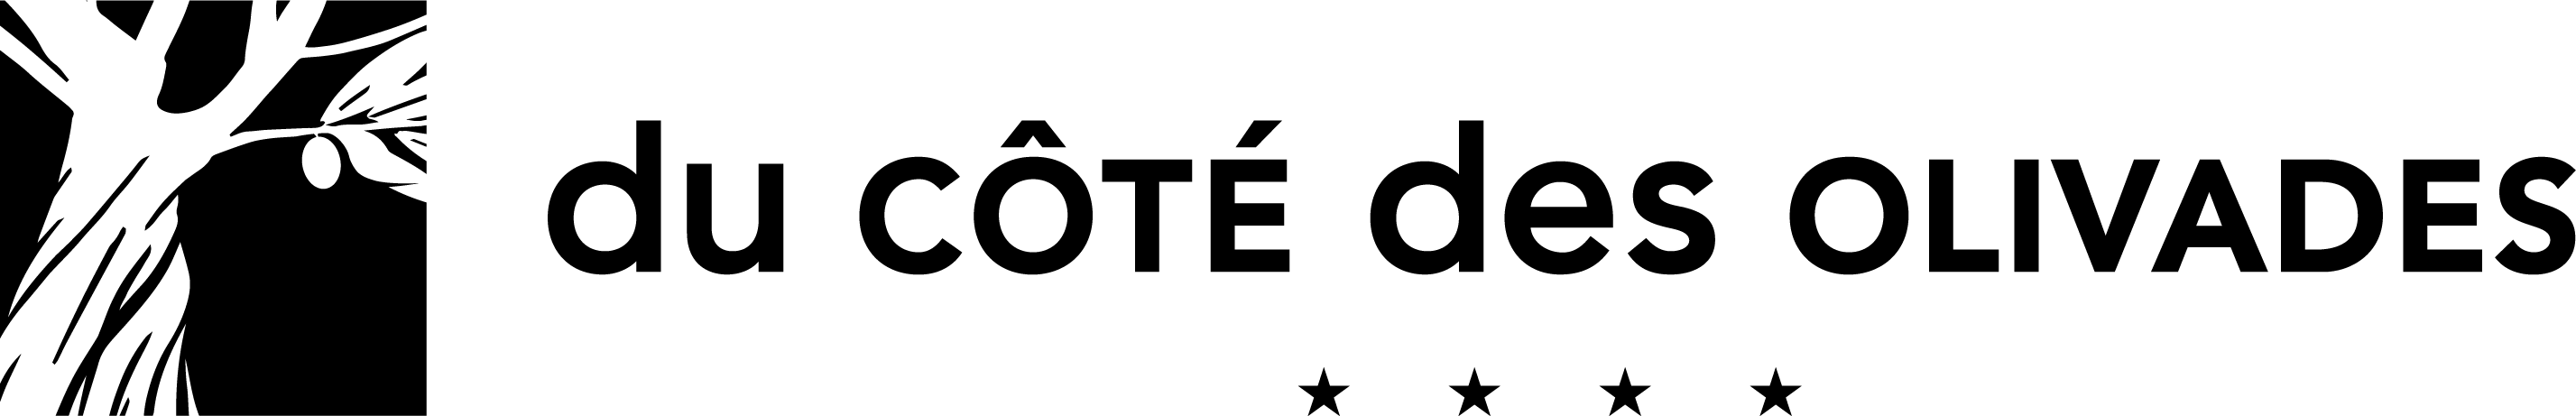 logo-du-cote-des-olivades